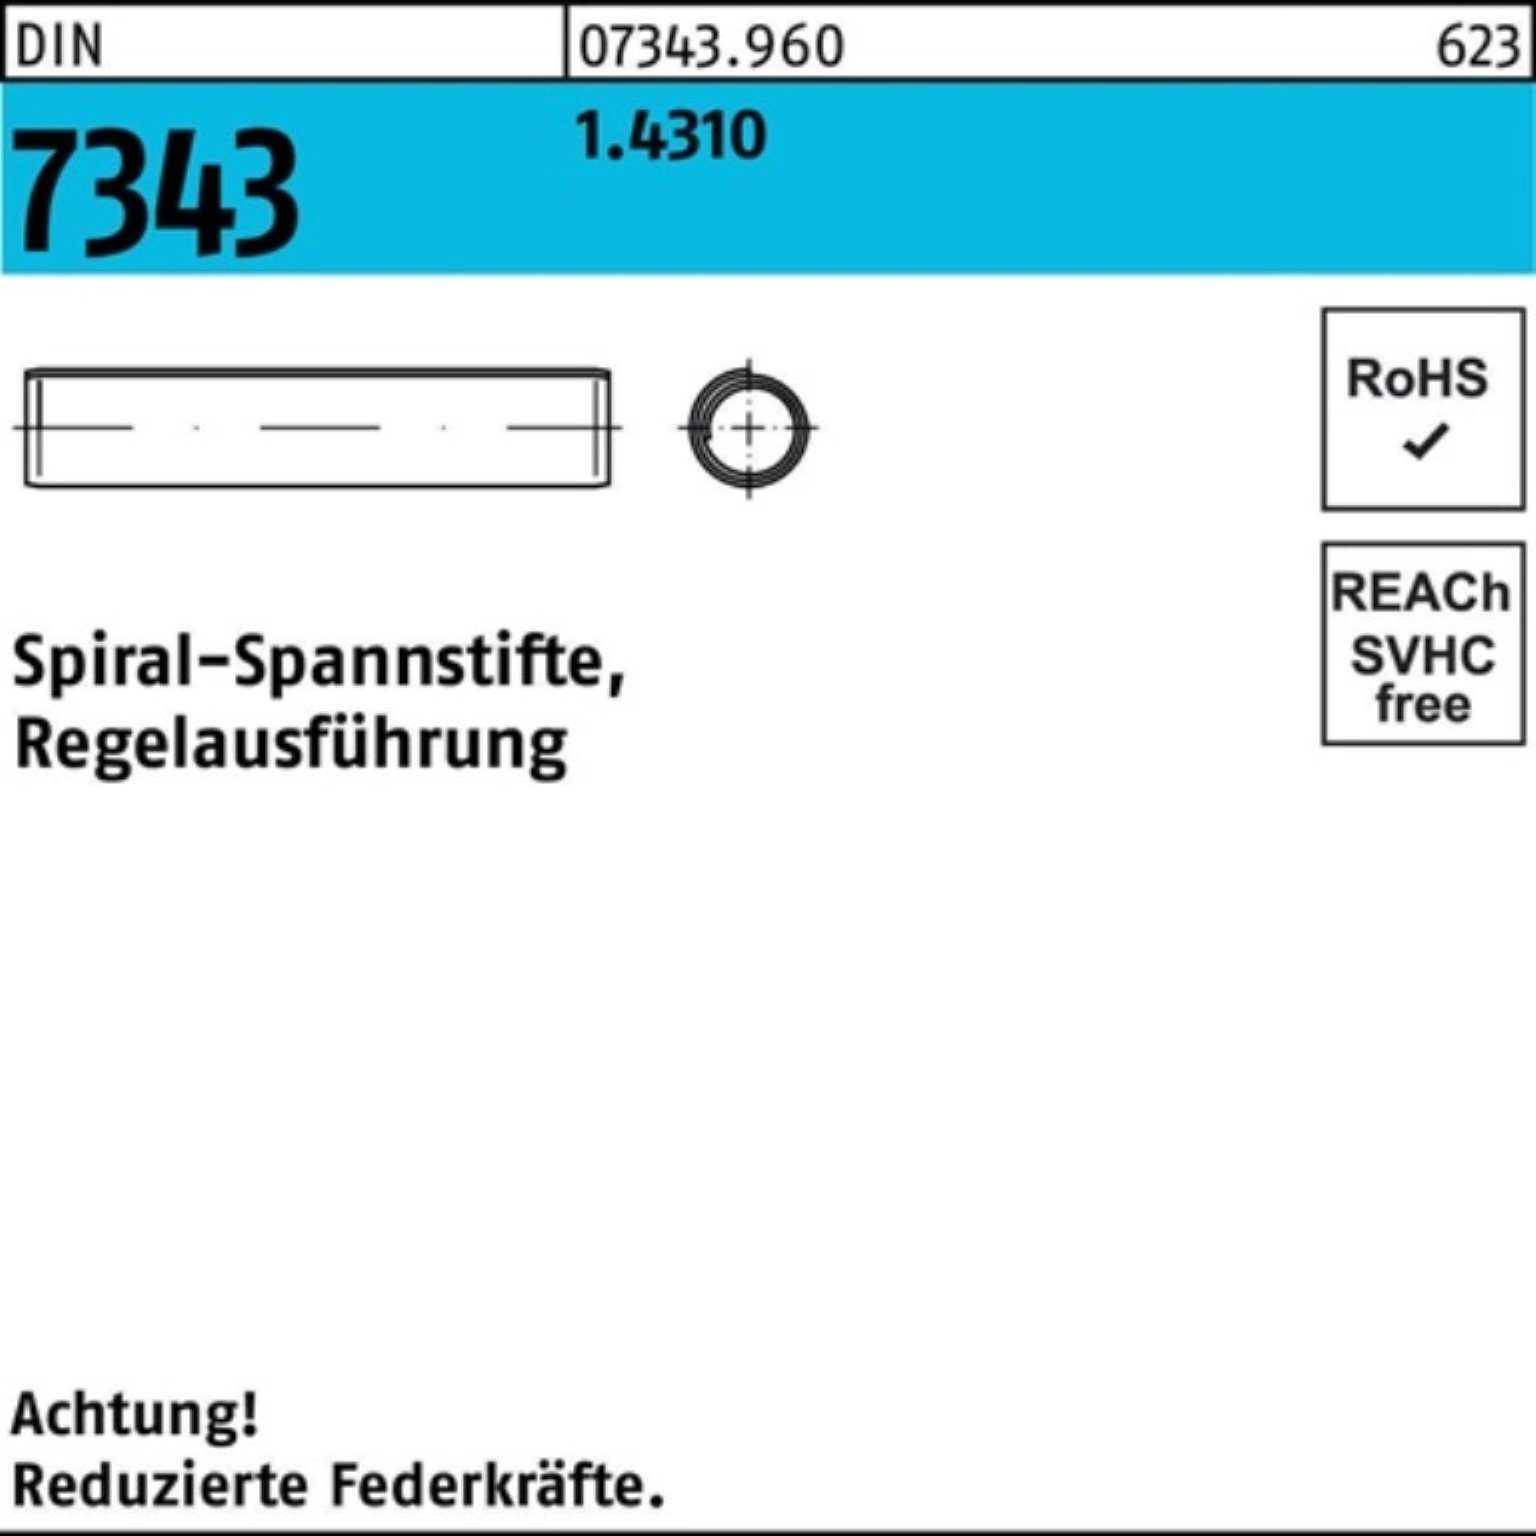 8750 Pack Spannstift DIN 1.4310 Reyher 2x 7343/ISO Spiralspannstift 1000er Regelausf. 6